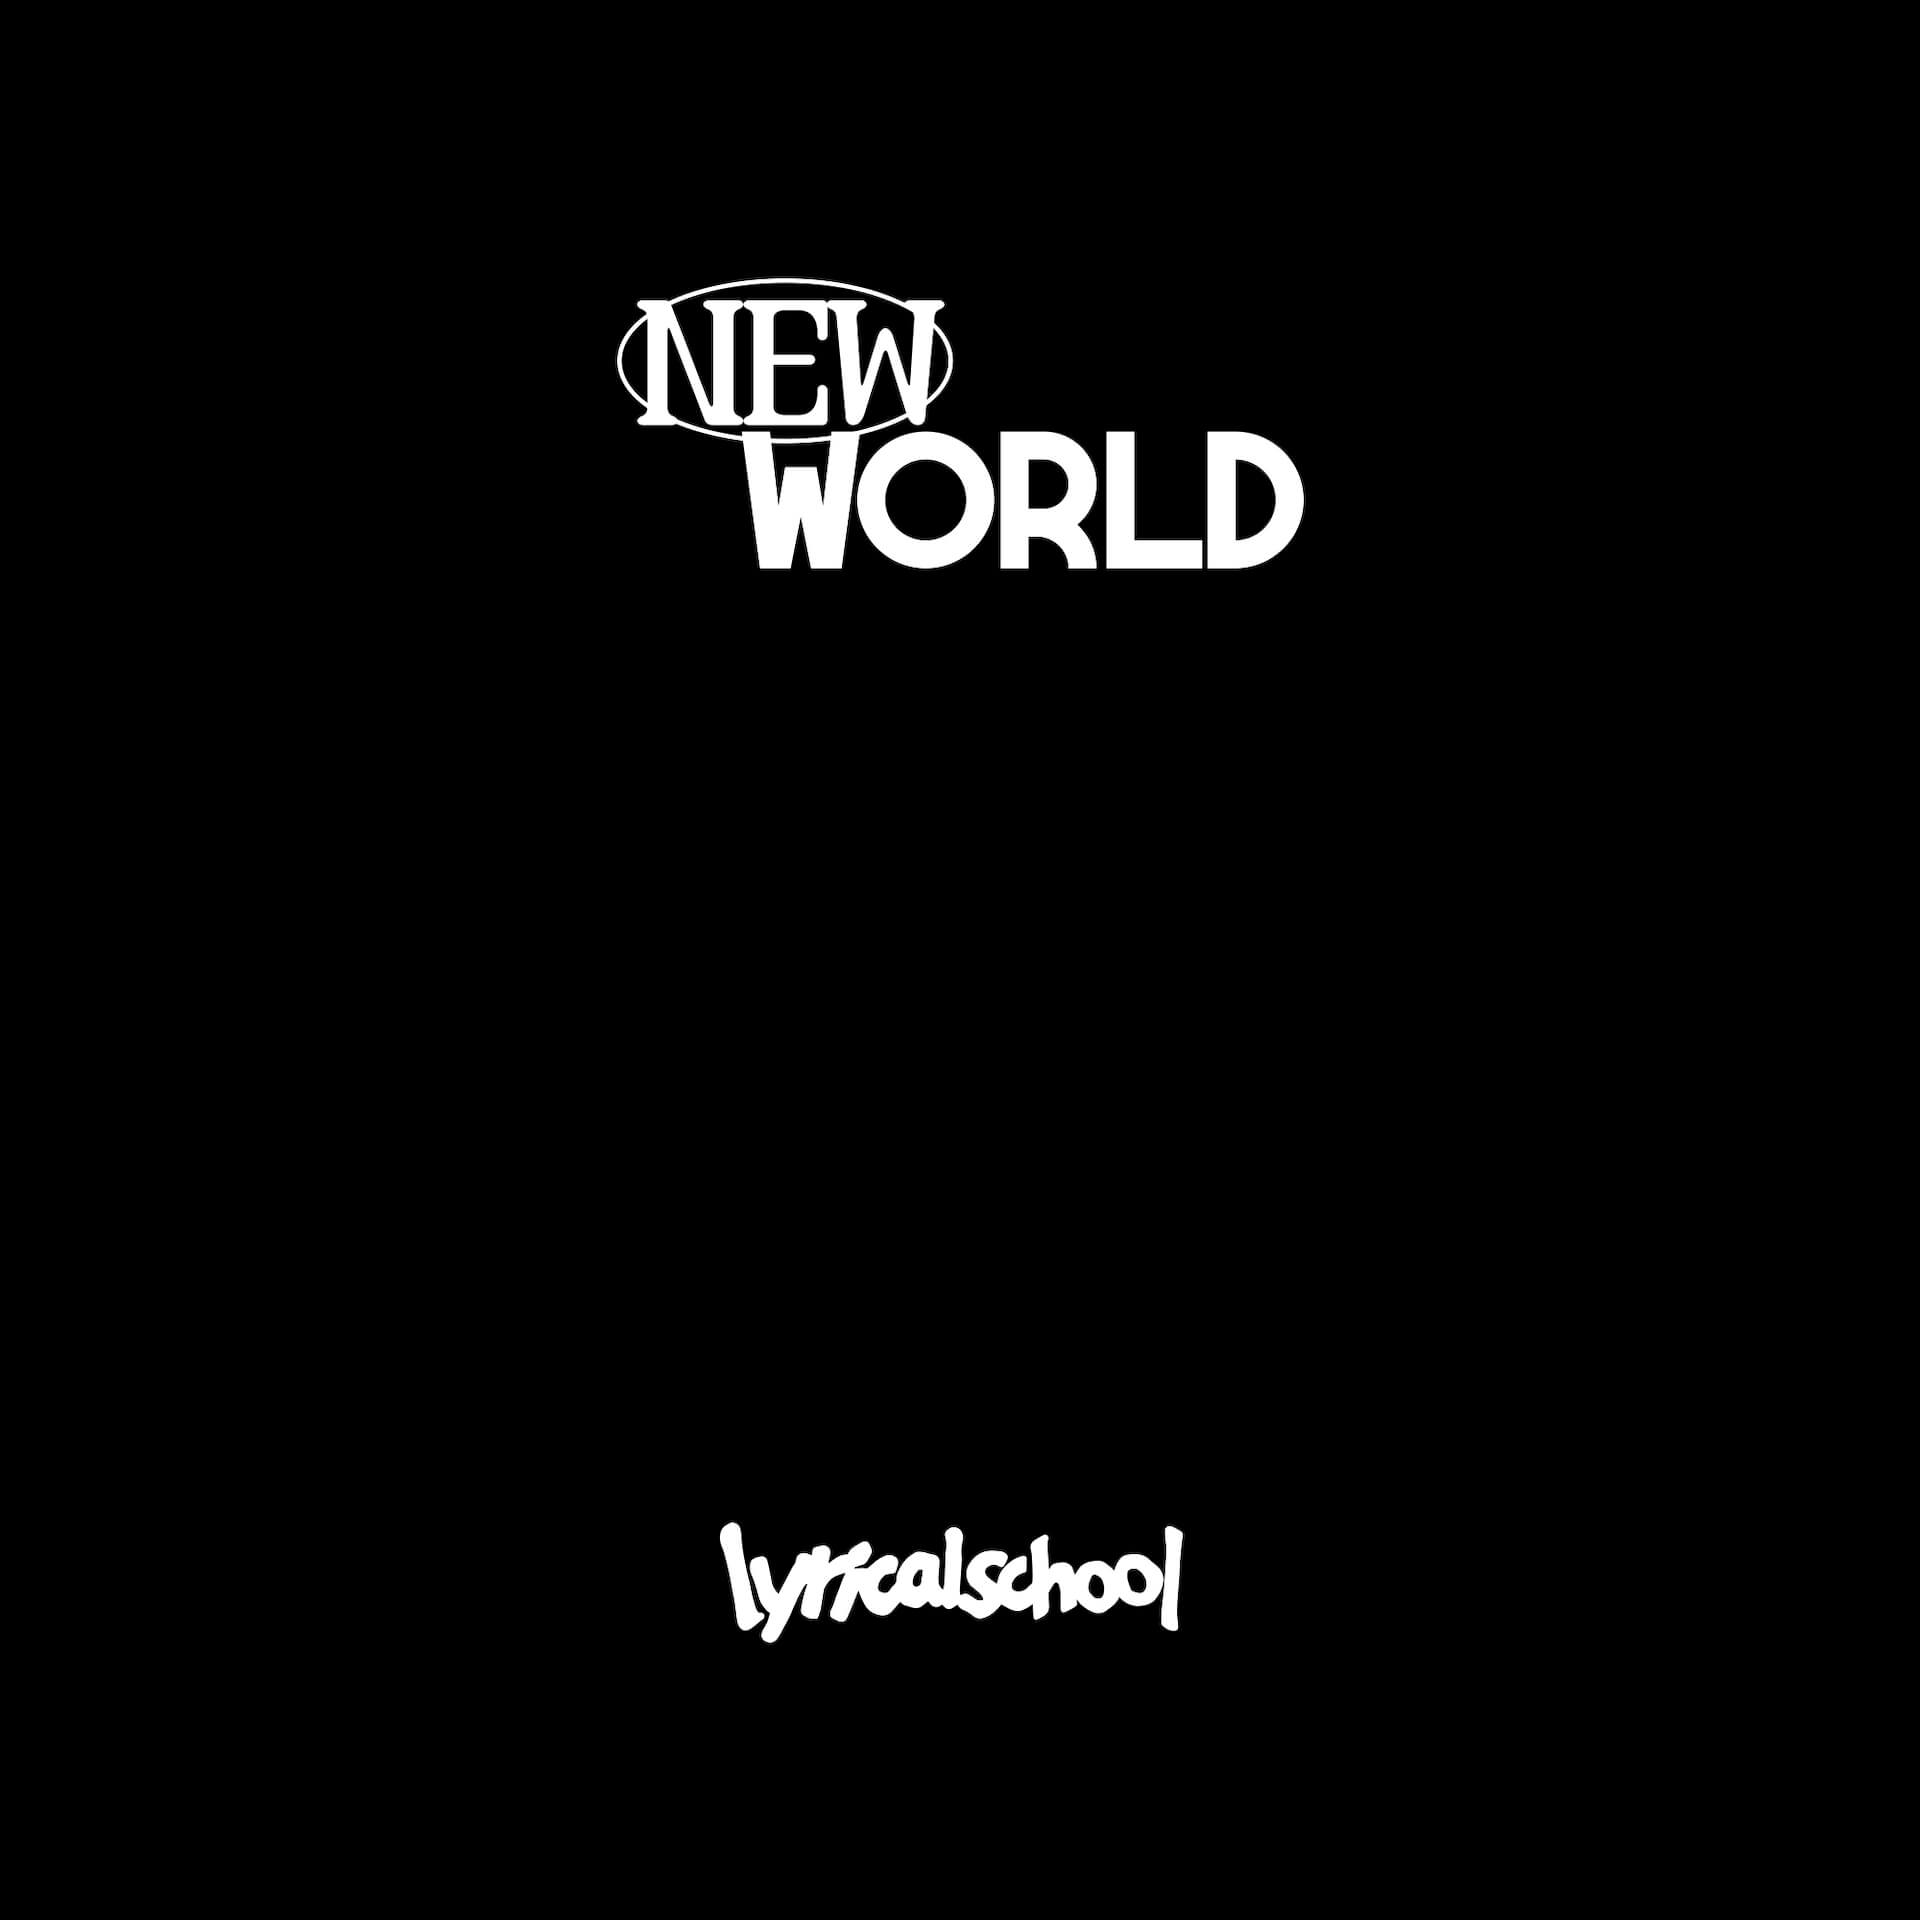 わたしたちのためのグループ──新生lyrical school、インタビュー＆「NEW WORLD」レビュー music230215-lyricalschool-4